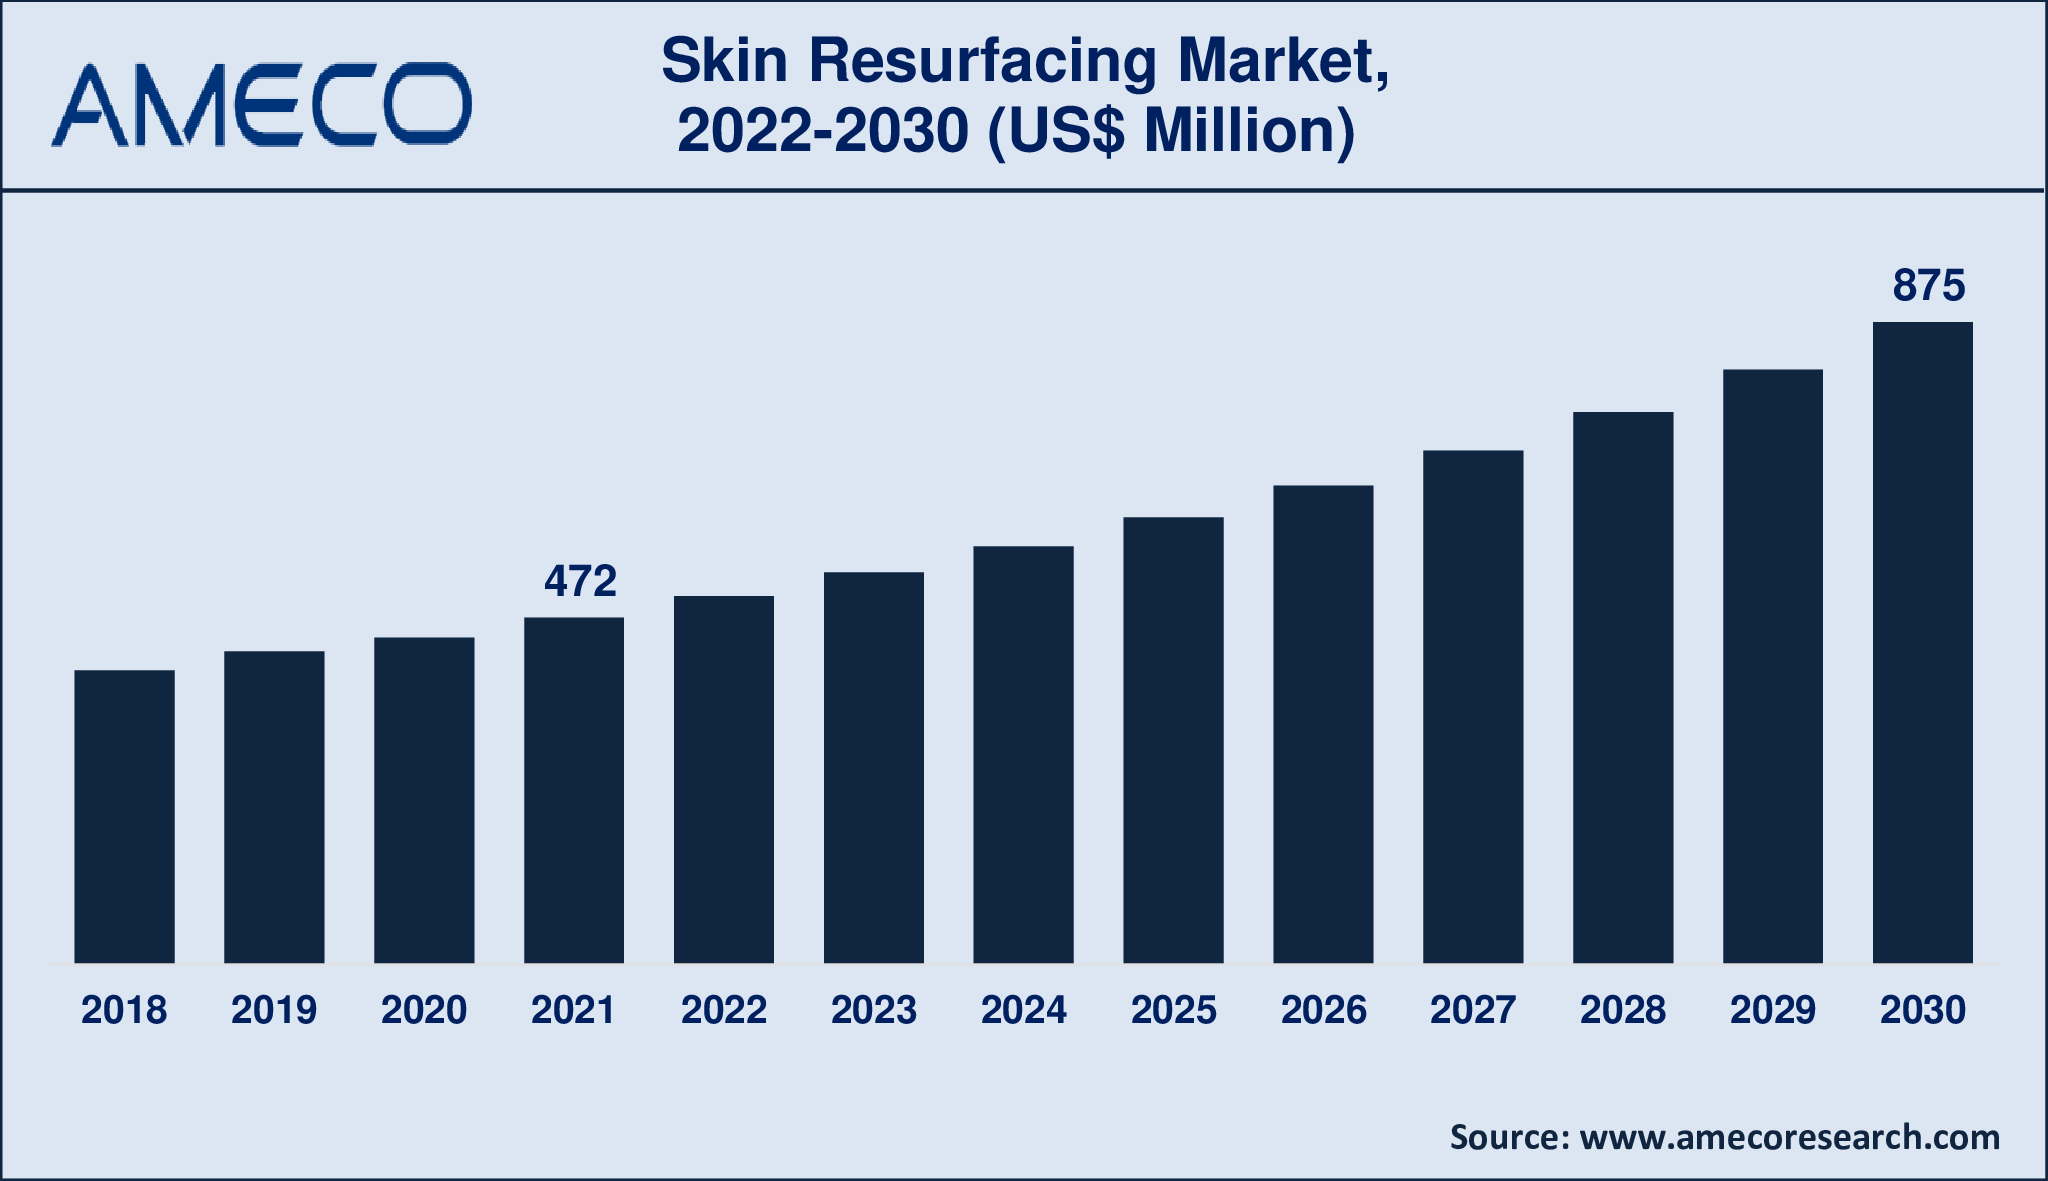 Skin Resurfacing Market Dynamics